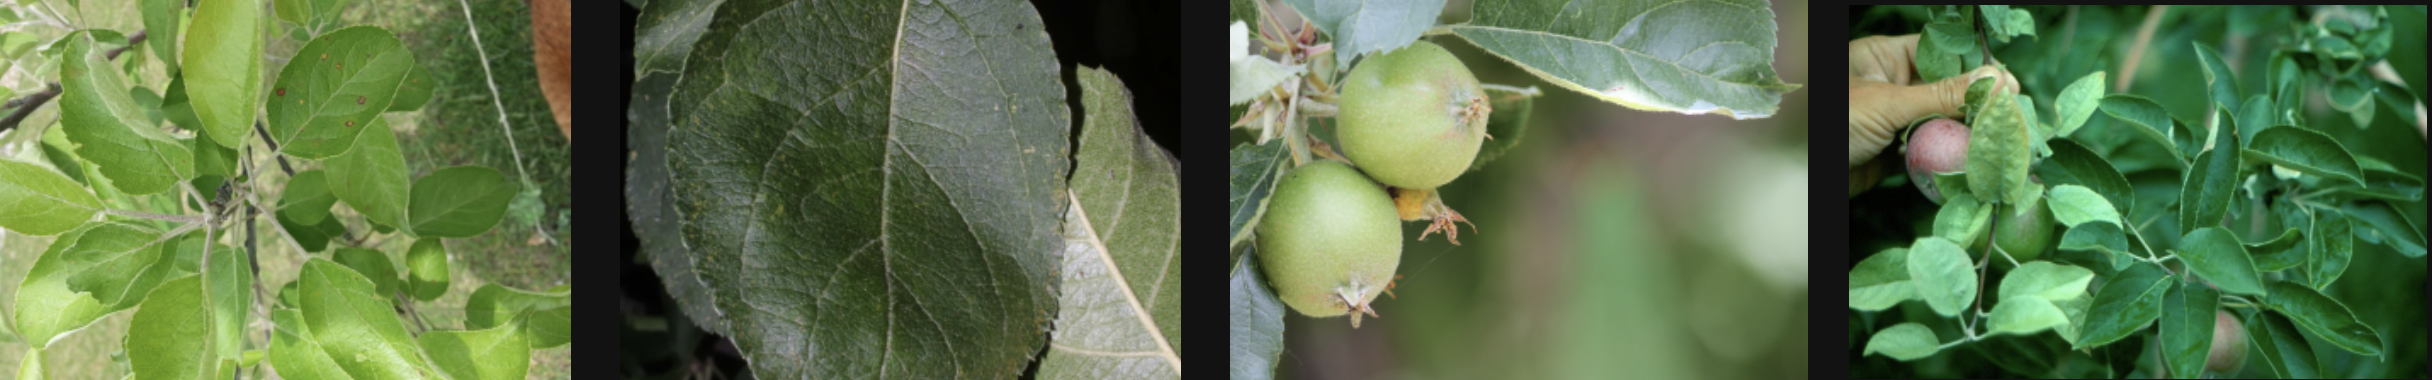 healthy-or-diseased-apple-leaves